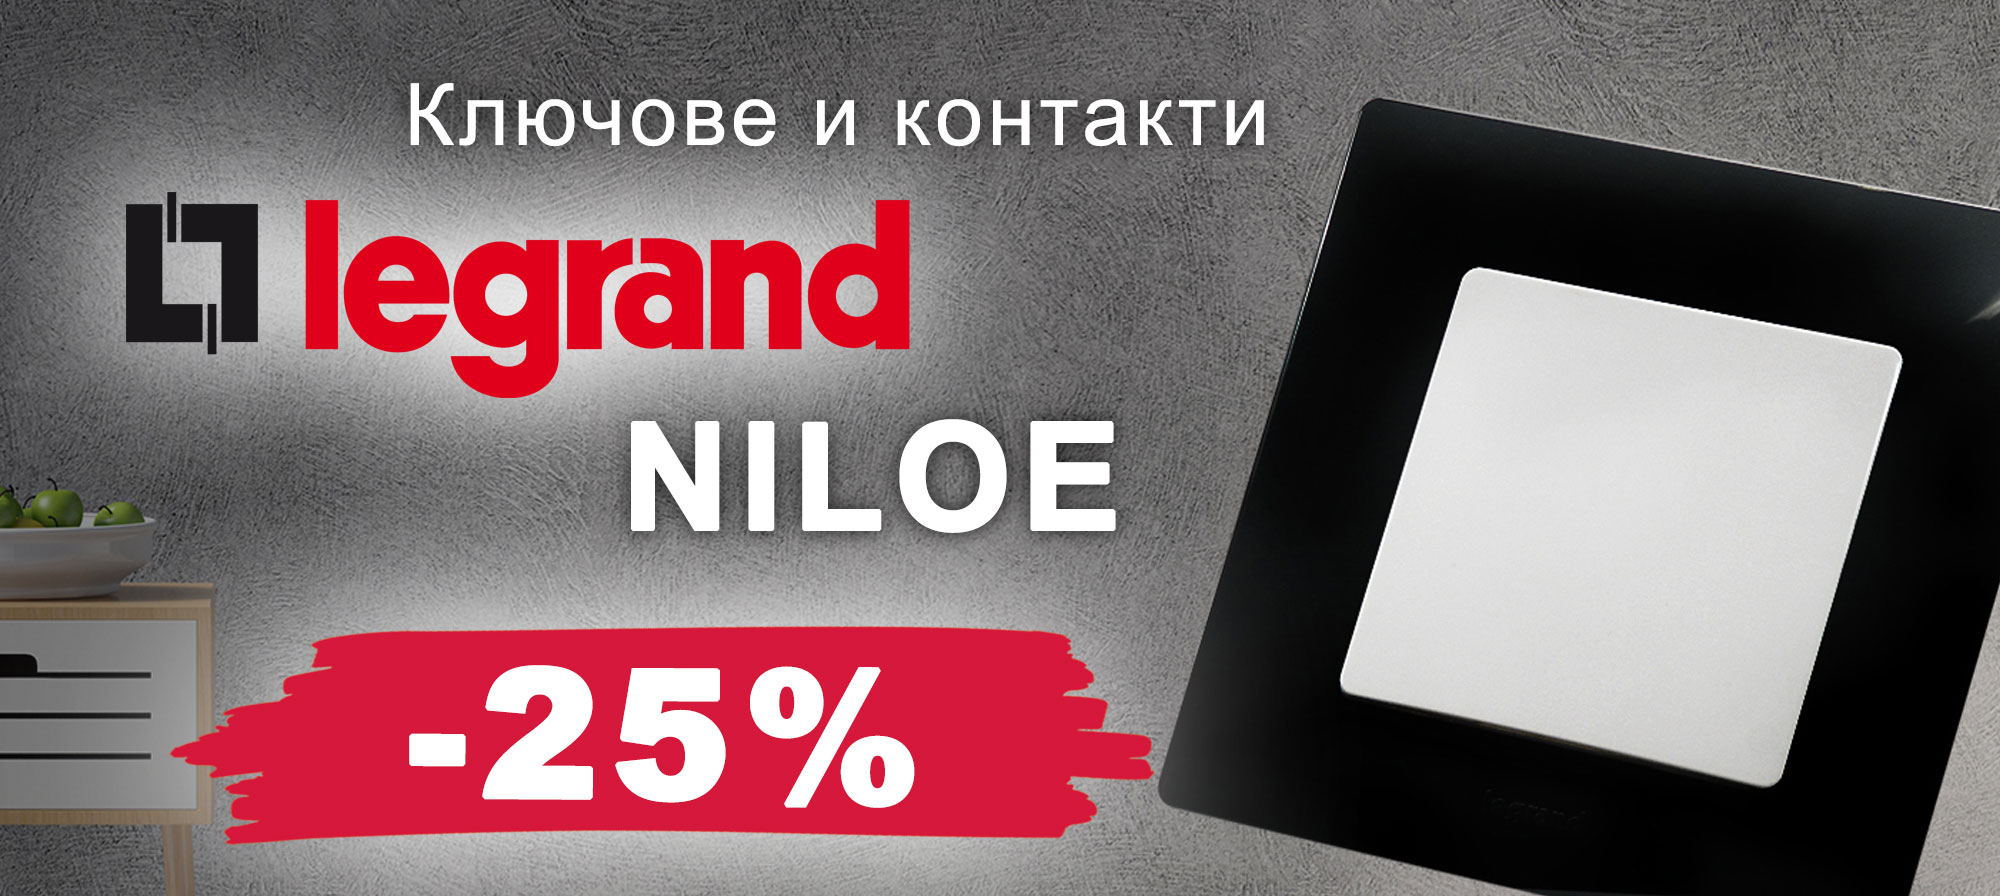 Ключове и контакти LeGrand Niloe с 25% отстъпка